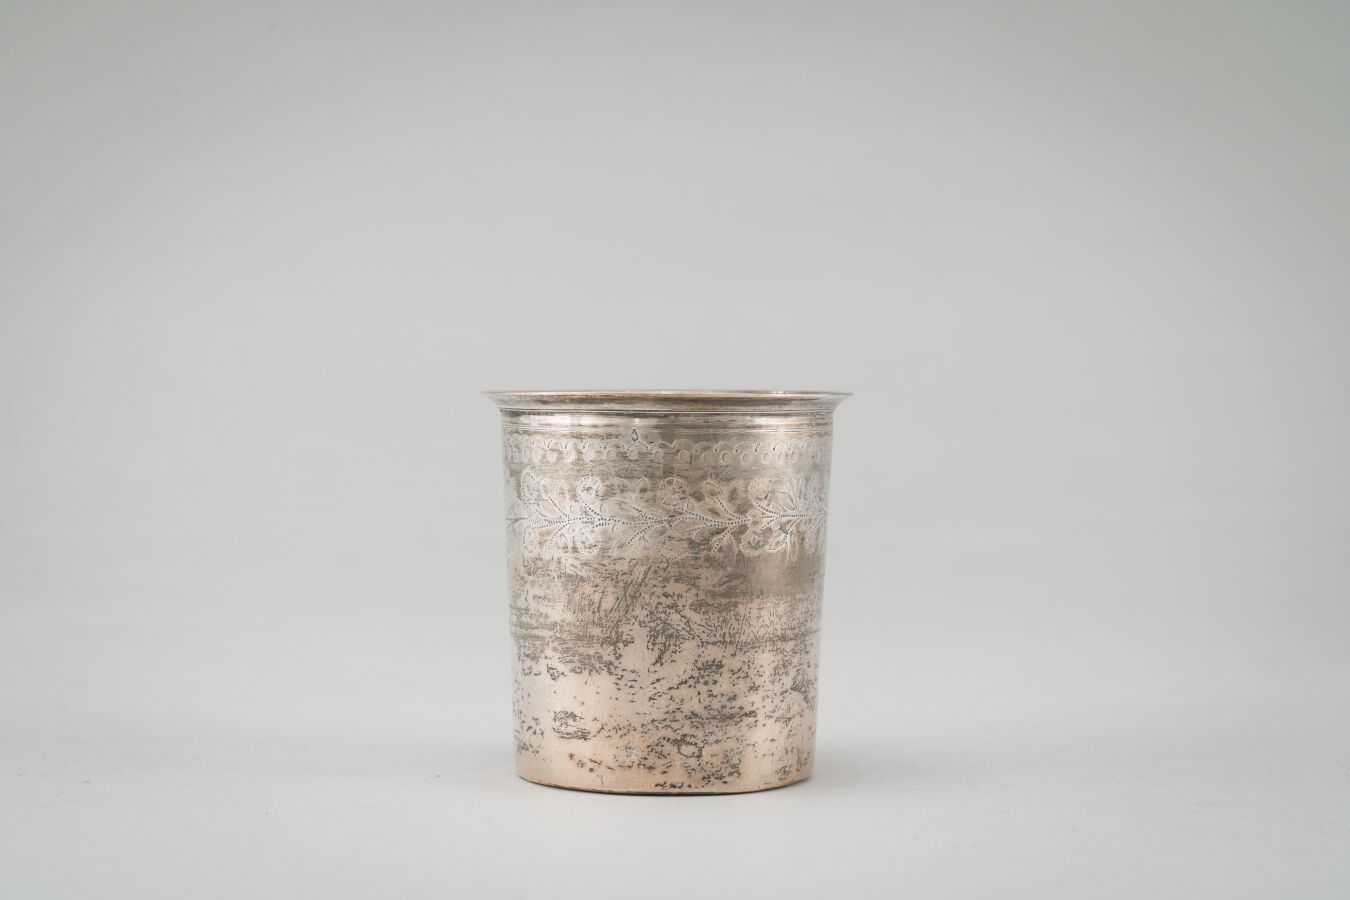 Null Bicchiere diritto in argento (950/1000) con decorazione a fregio floreale.
&hellip;